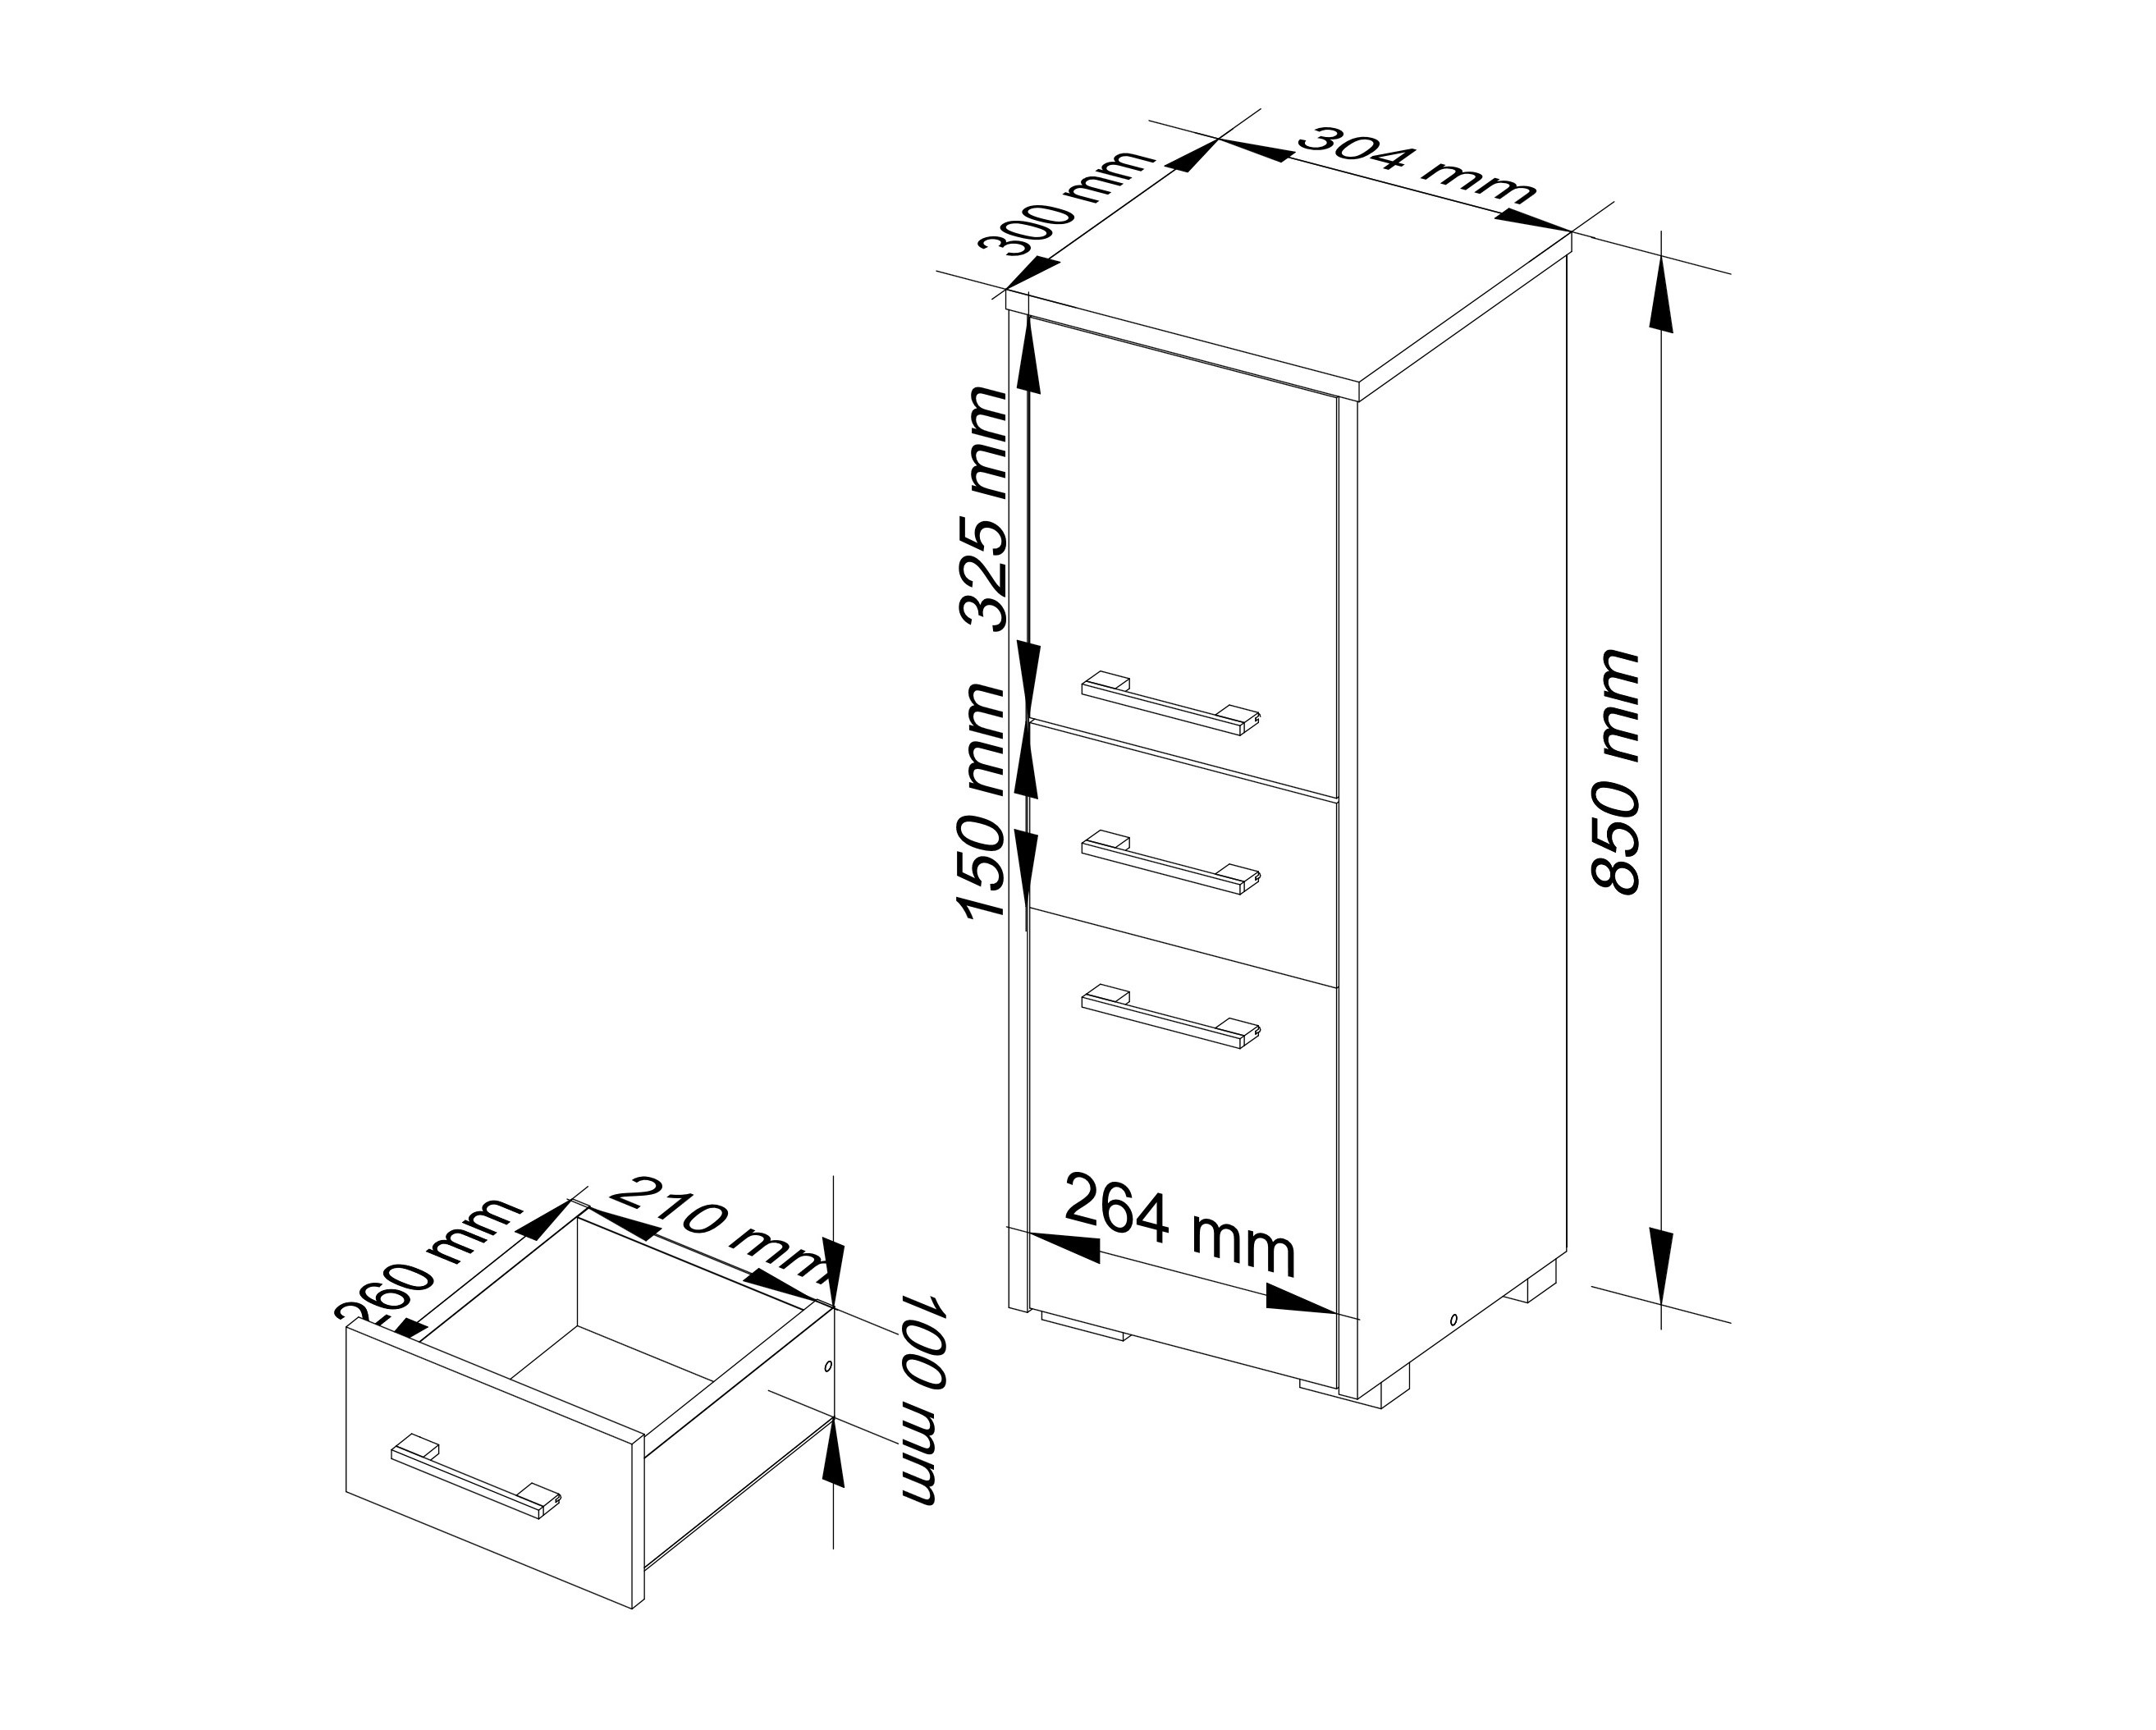 Meble AKORD - Szafka łazienkowa FIN Wenge 30 cm 2 drzwi 1 szuflada kolor Dąb Sonoma mat 3 półki 30x30x85 cm - Wymiary toaletki AKORD - 5907504389073